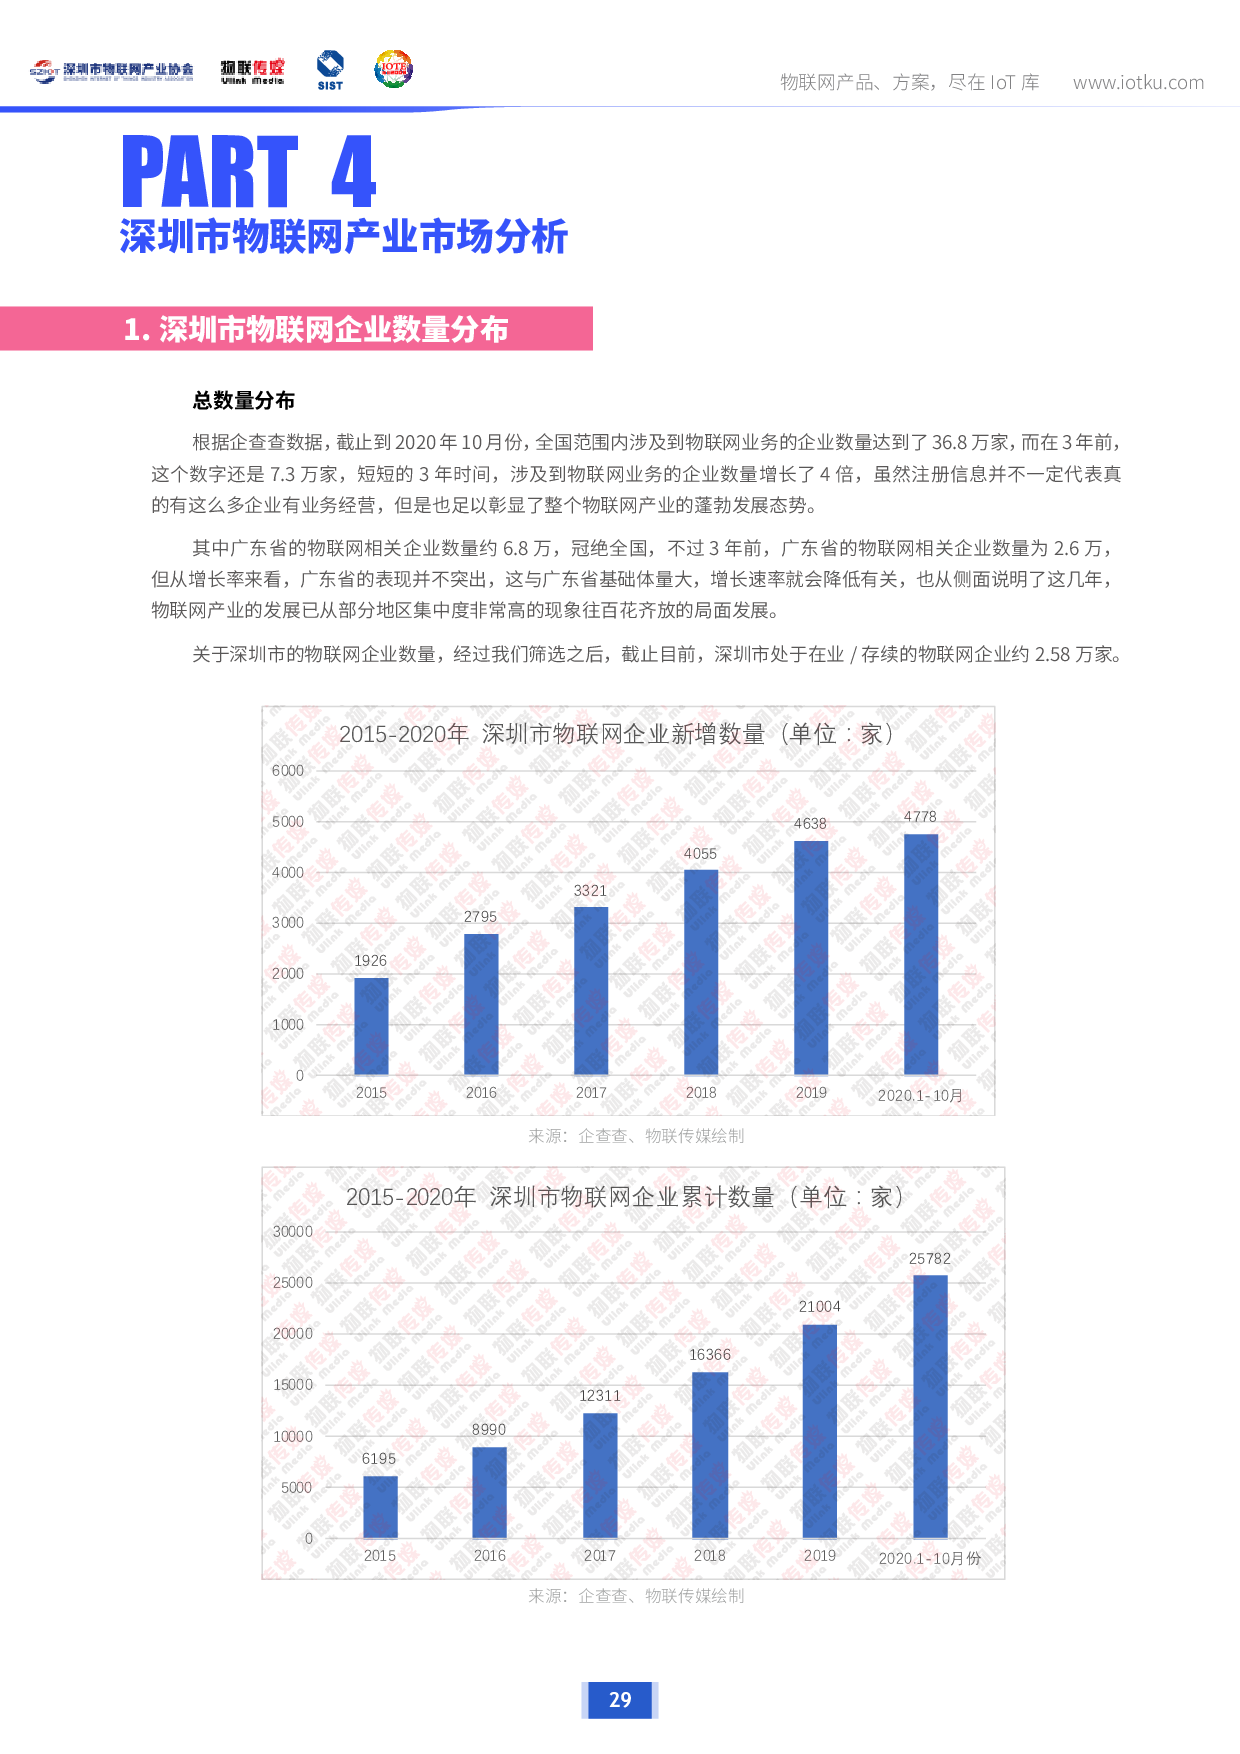 【最新发布】深圳市物联网产业调研报告2020版图片